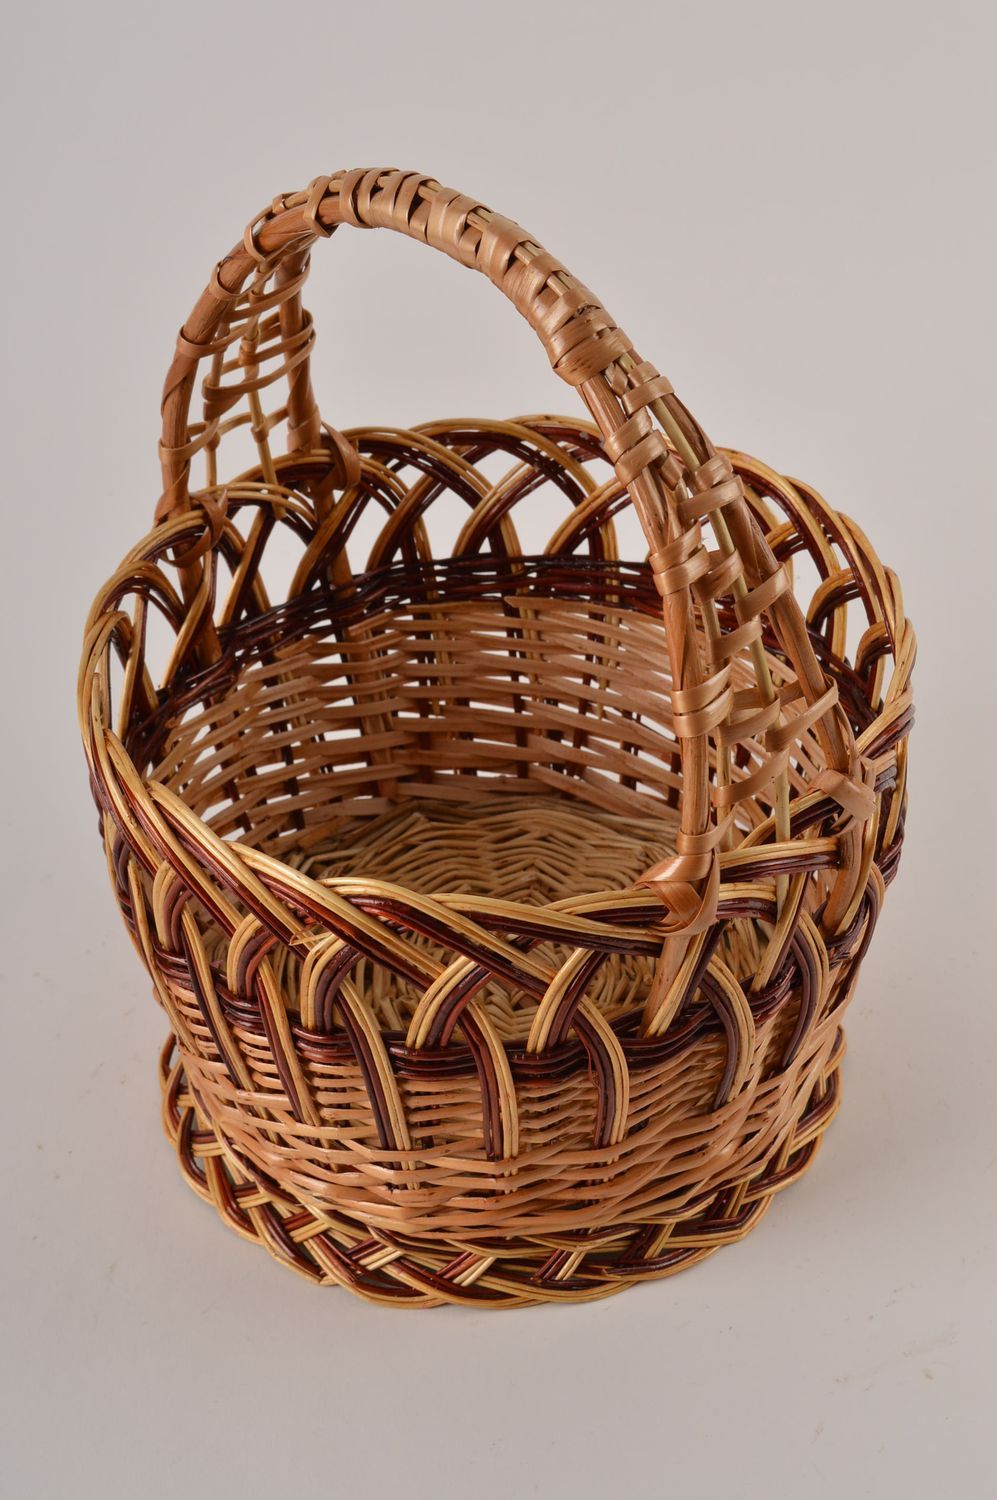 Buy Wicker Basket Decorative Basket Easter Basket Storage Baskets